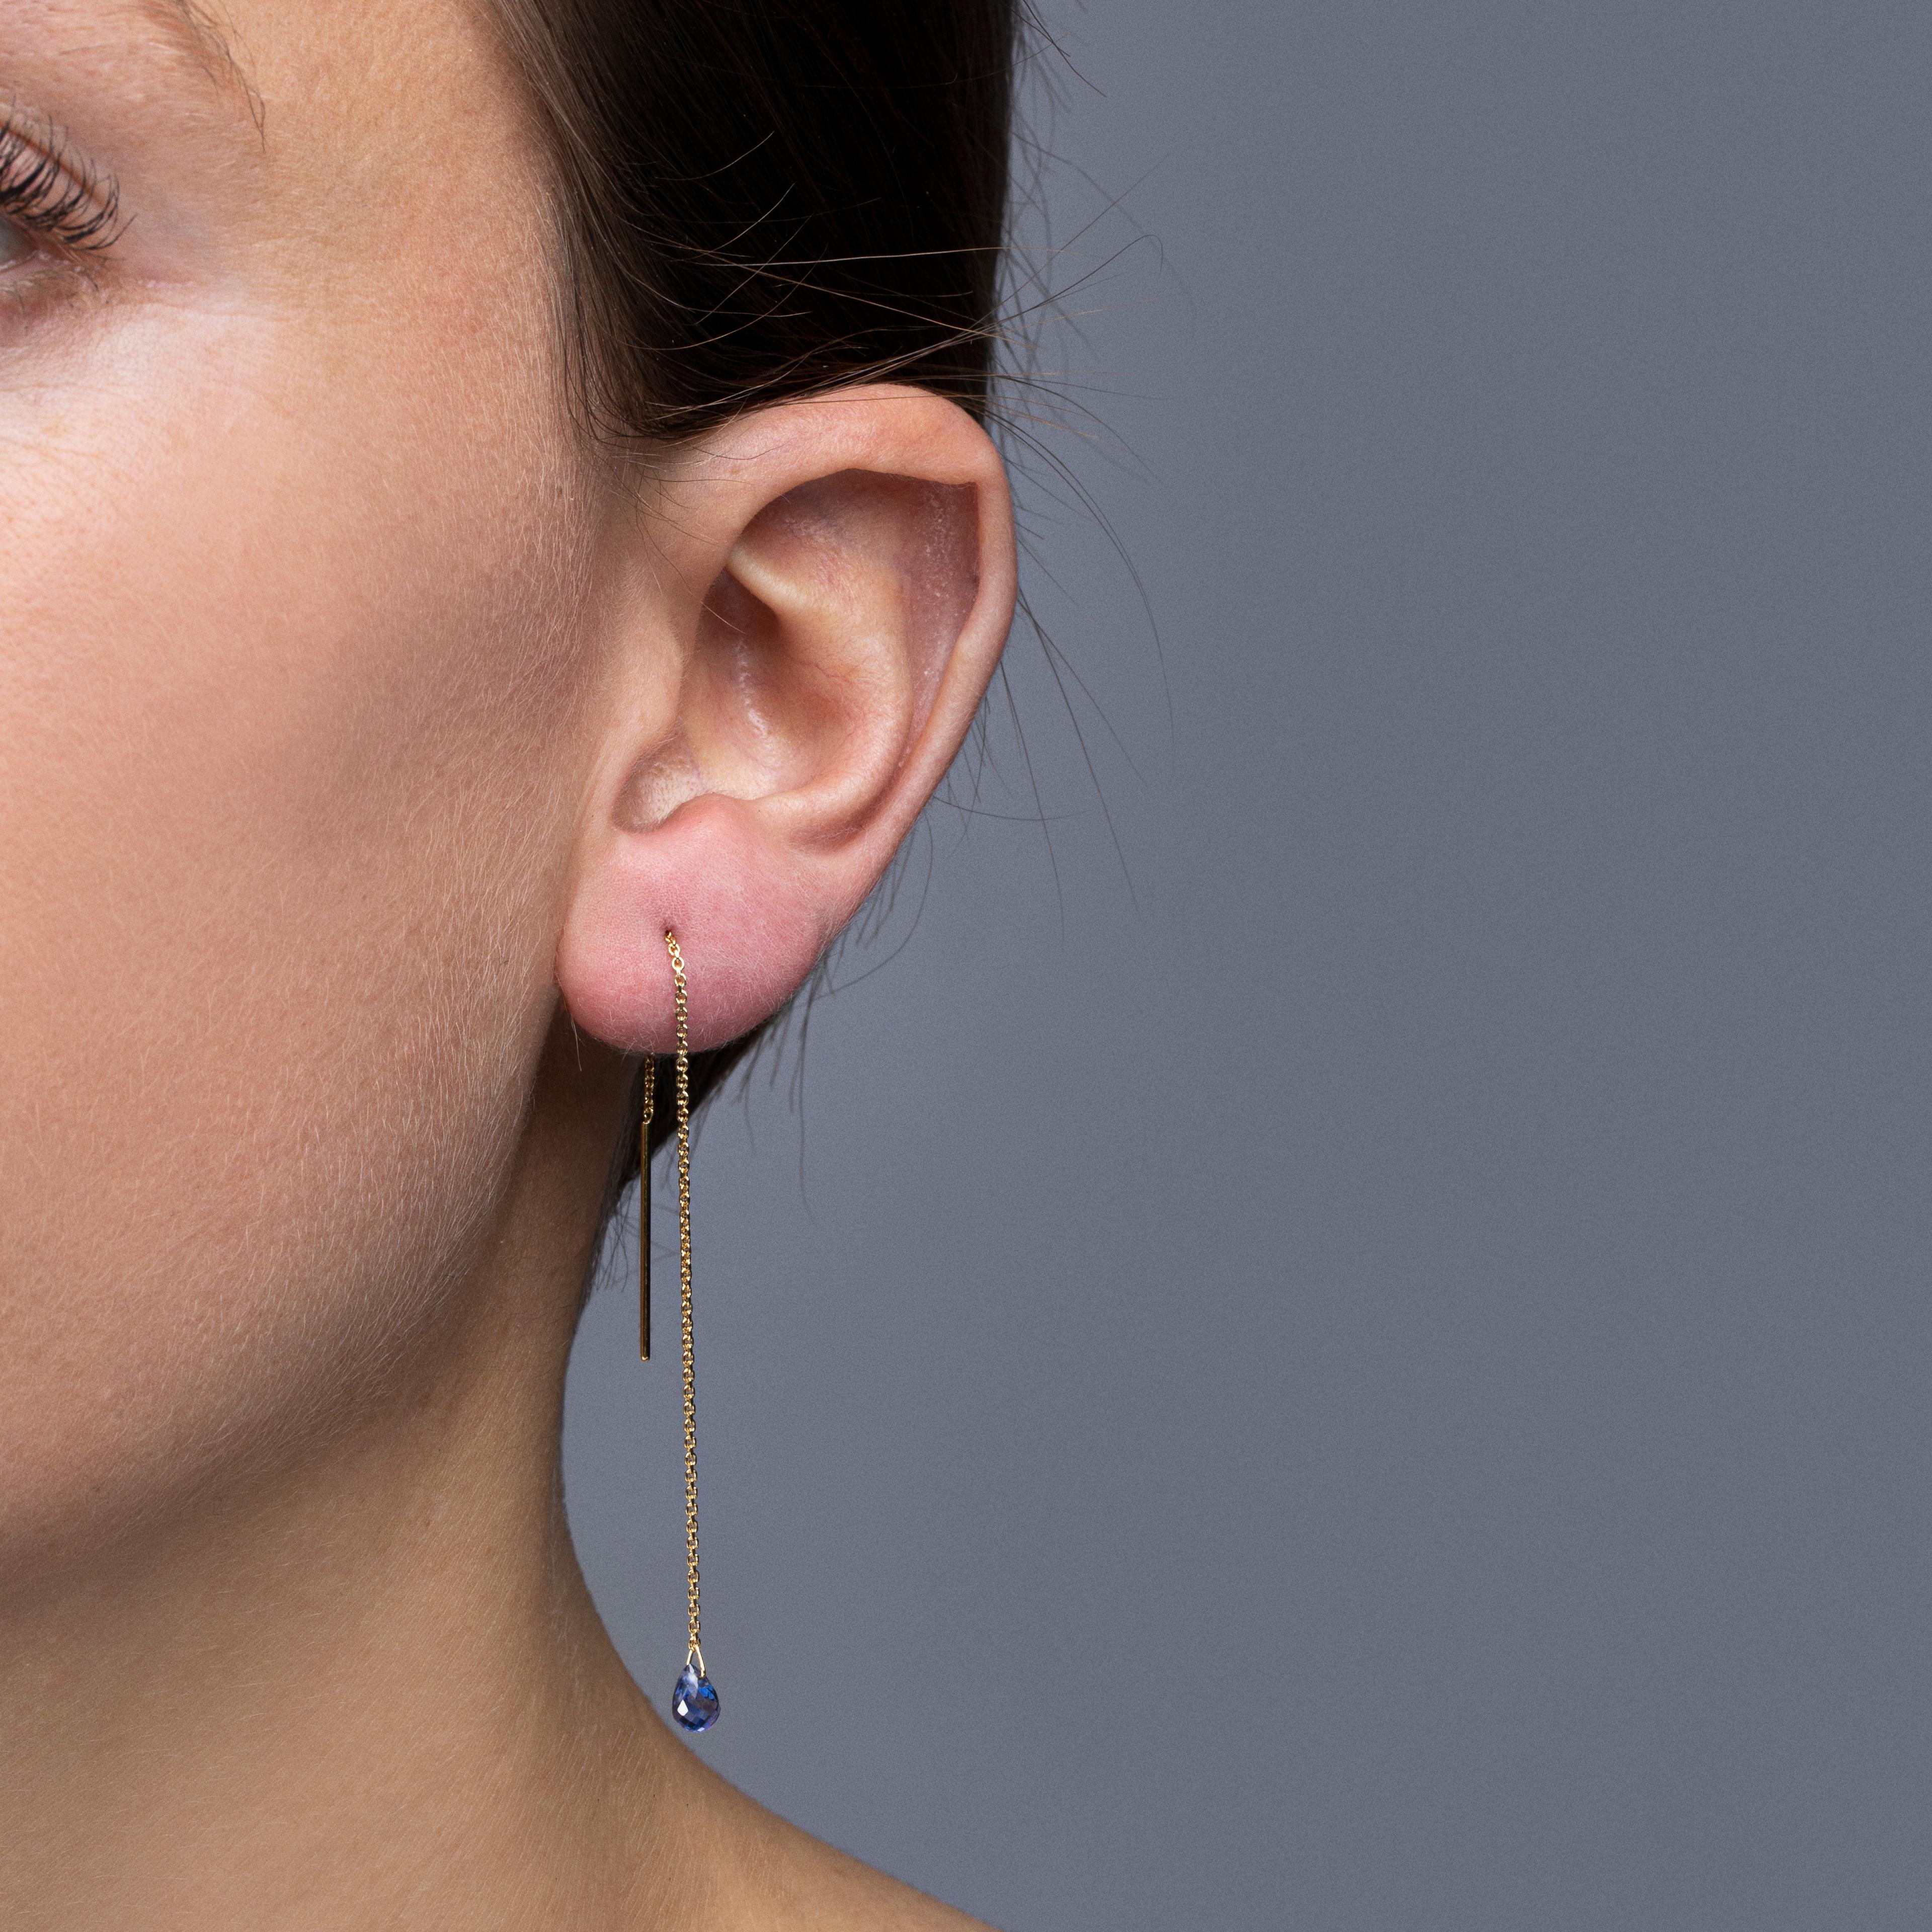 Alex Jona Design-Kollektion, handgefertigt in Italien, Ohrringe aus 18 Karat Gelbgold mit zwei flach geschliffenen rosa Saphiren von insgesamt 1,85 Karat.
Abmessungen: L x  1 cm / L x  0.39 in.

Die Schmuckstücke von Alex Jona zeichnen sich nicht